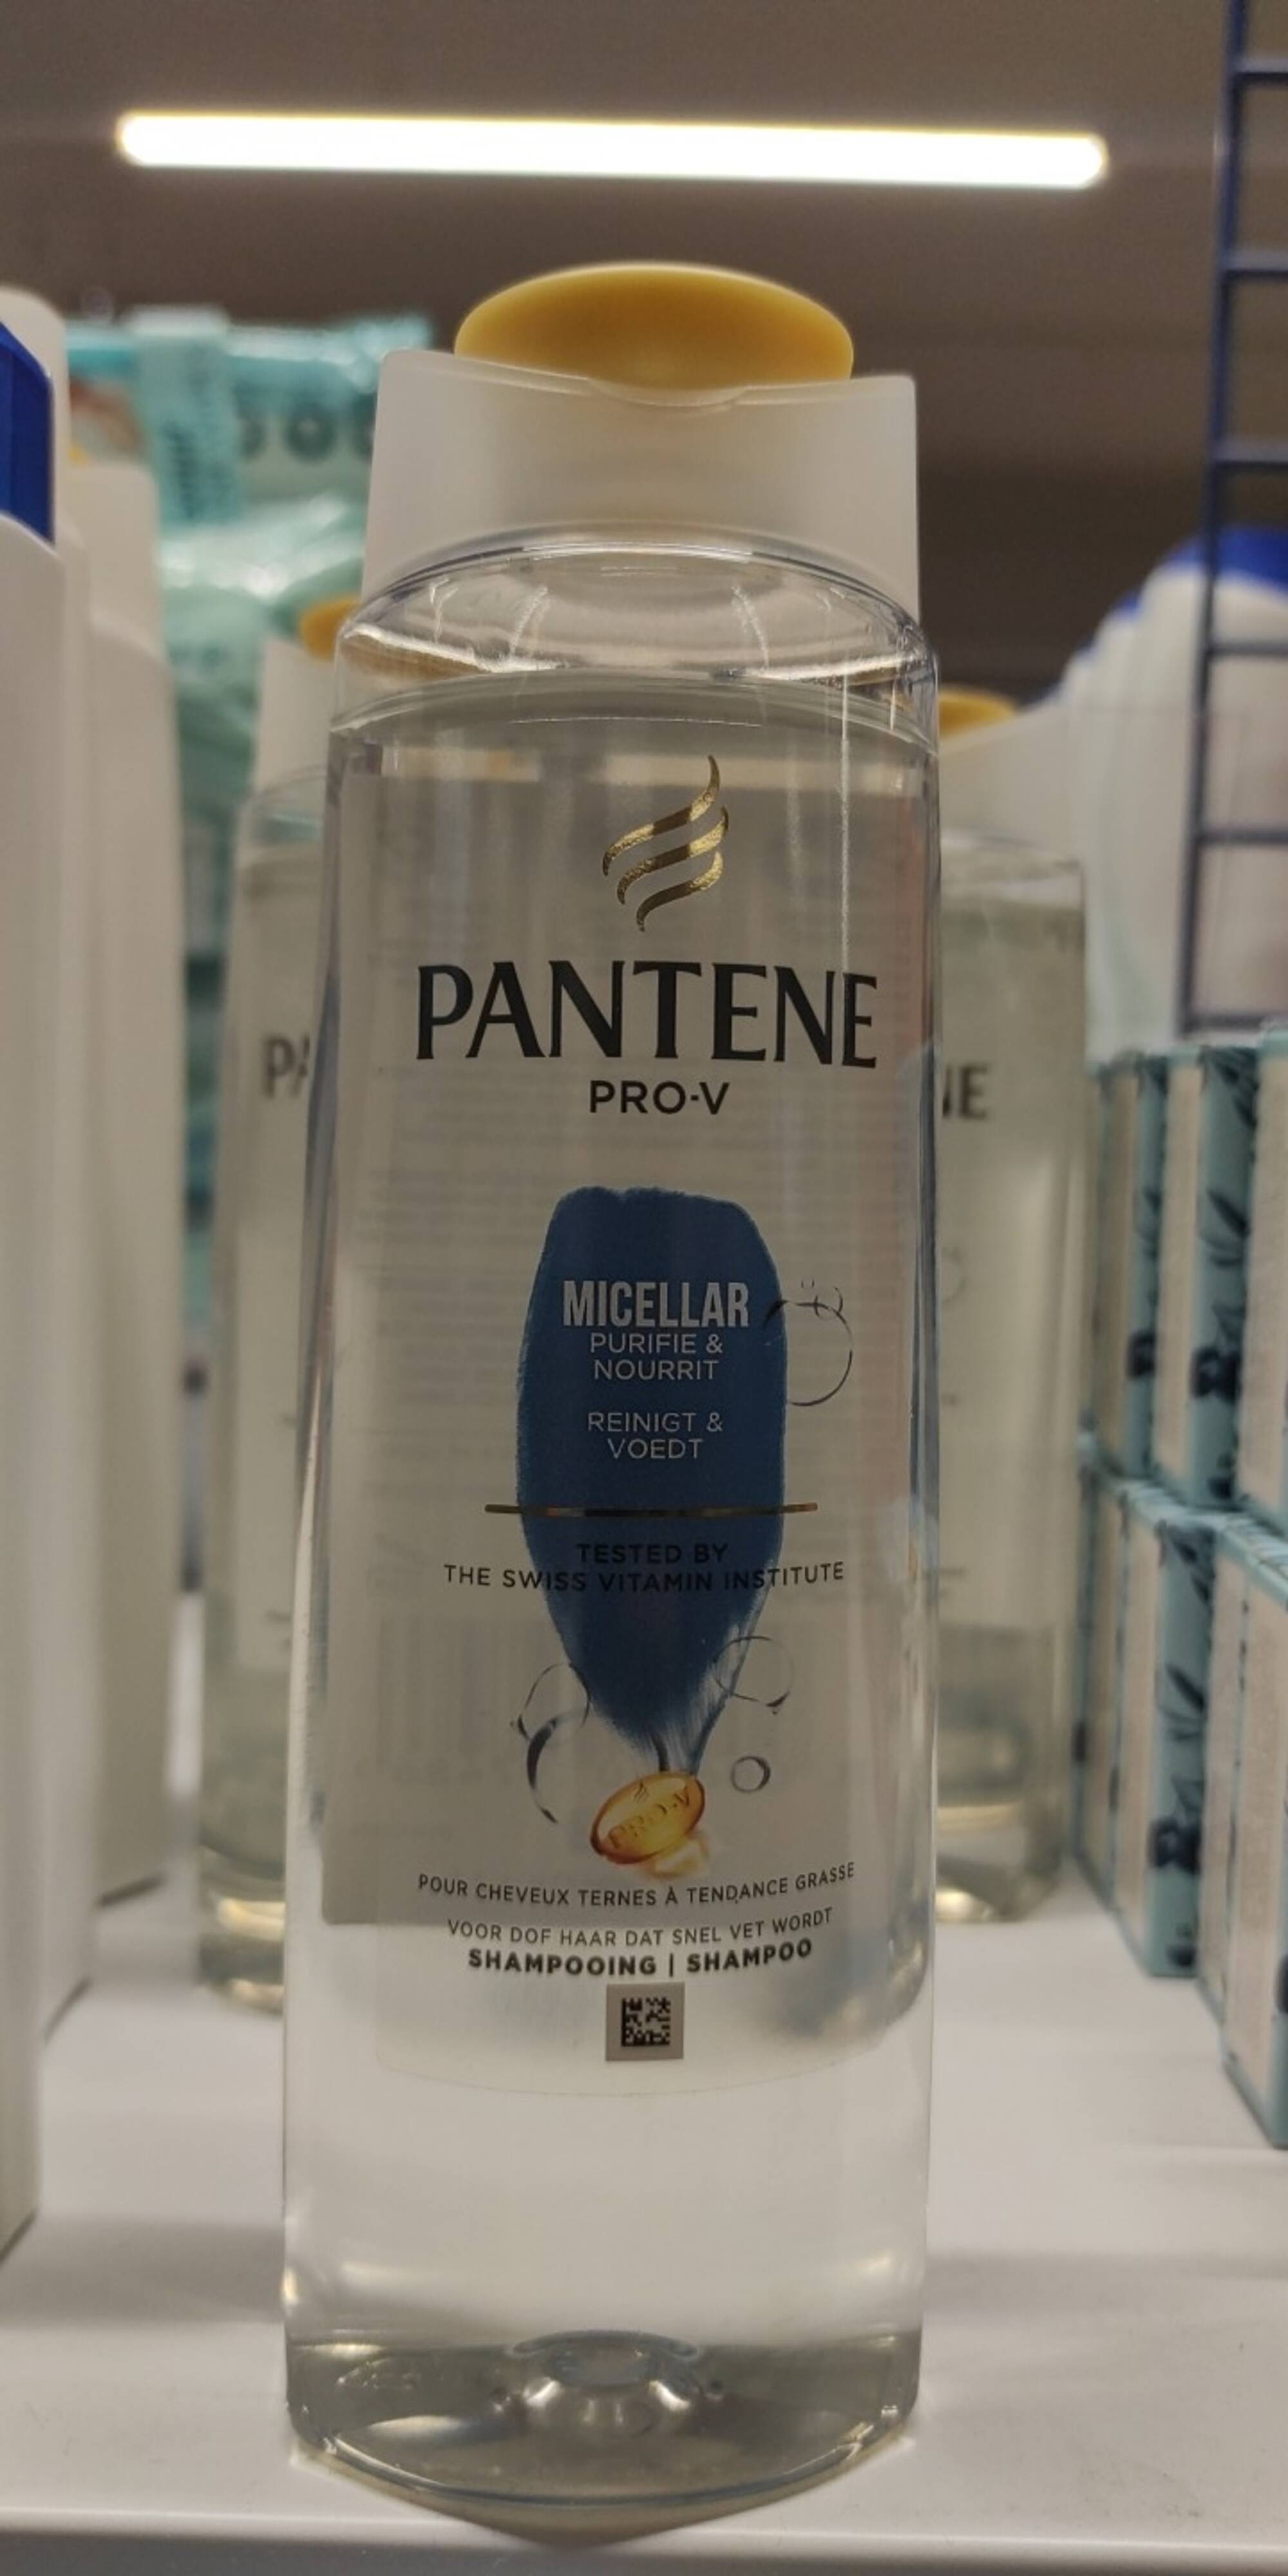 PANTENE PRO-V - Micellar purifie & nourrit - Shampooing